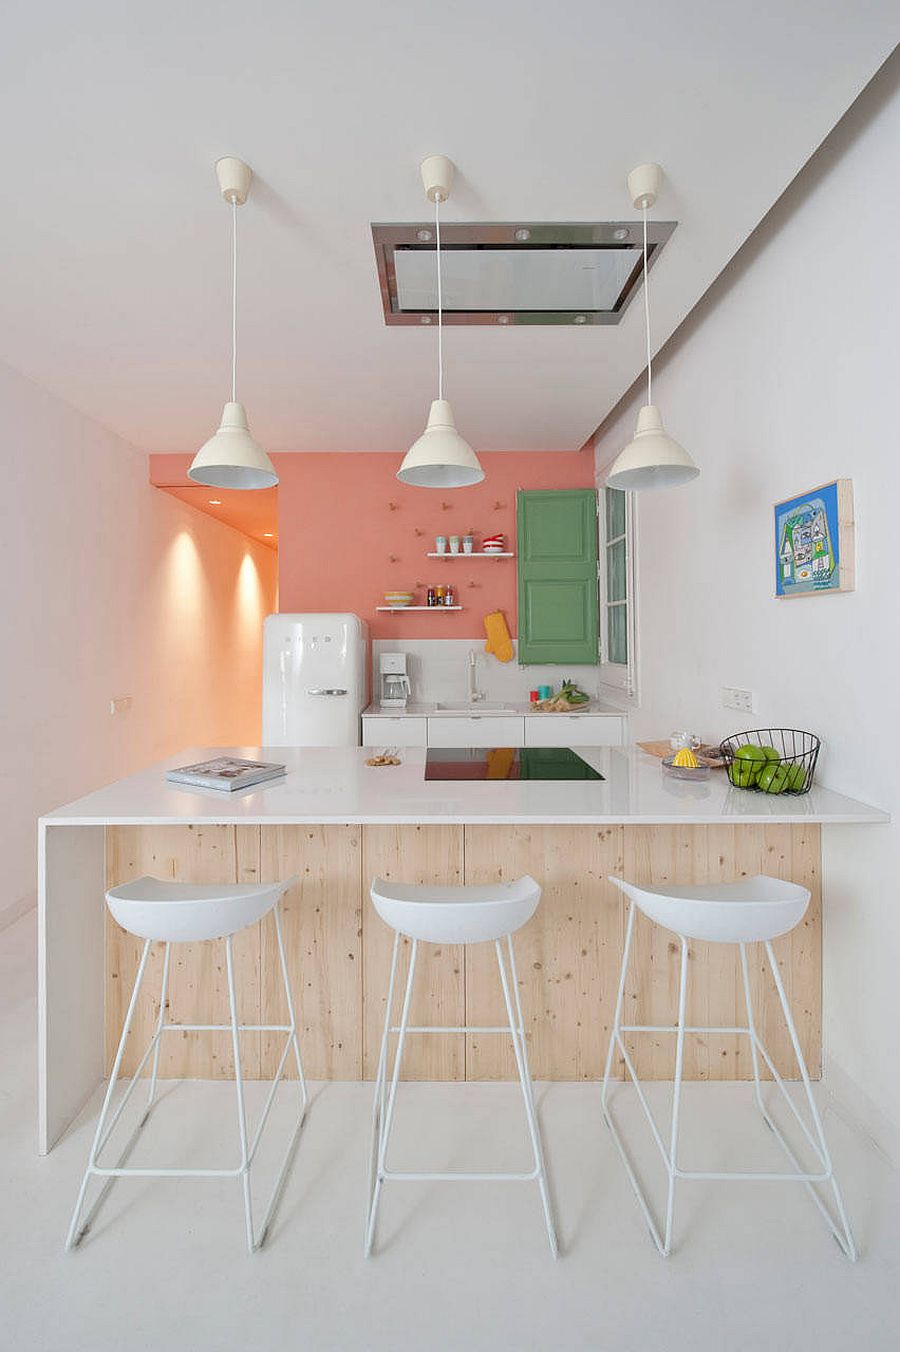 Ngắm những căn bếp nhỏ đầy màu sắc, đẹp đến mức làm xiêu lòng bất cứ ai - Ảnh 6.